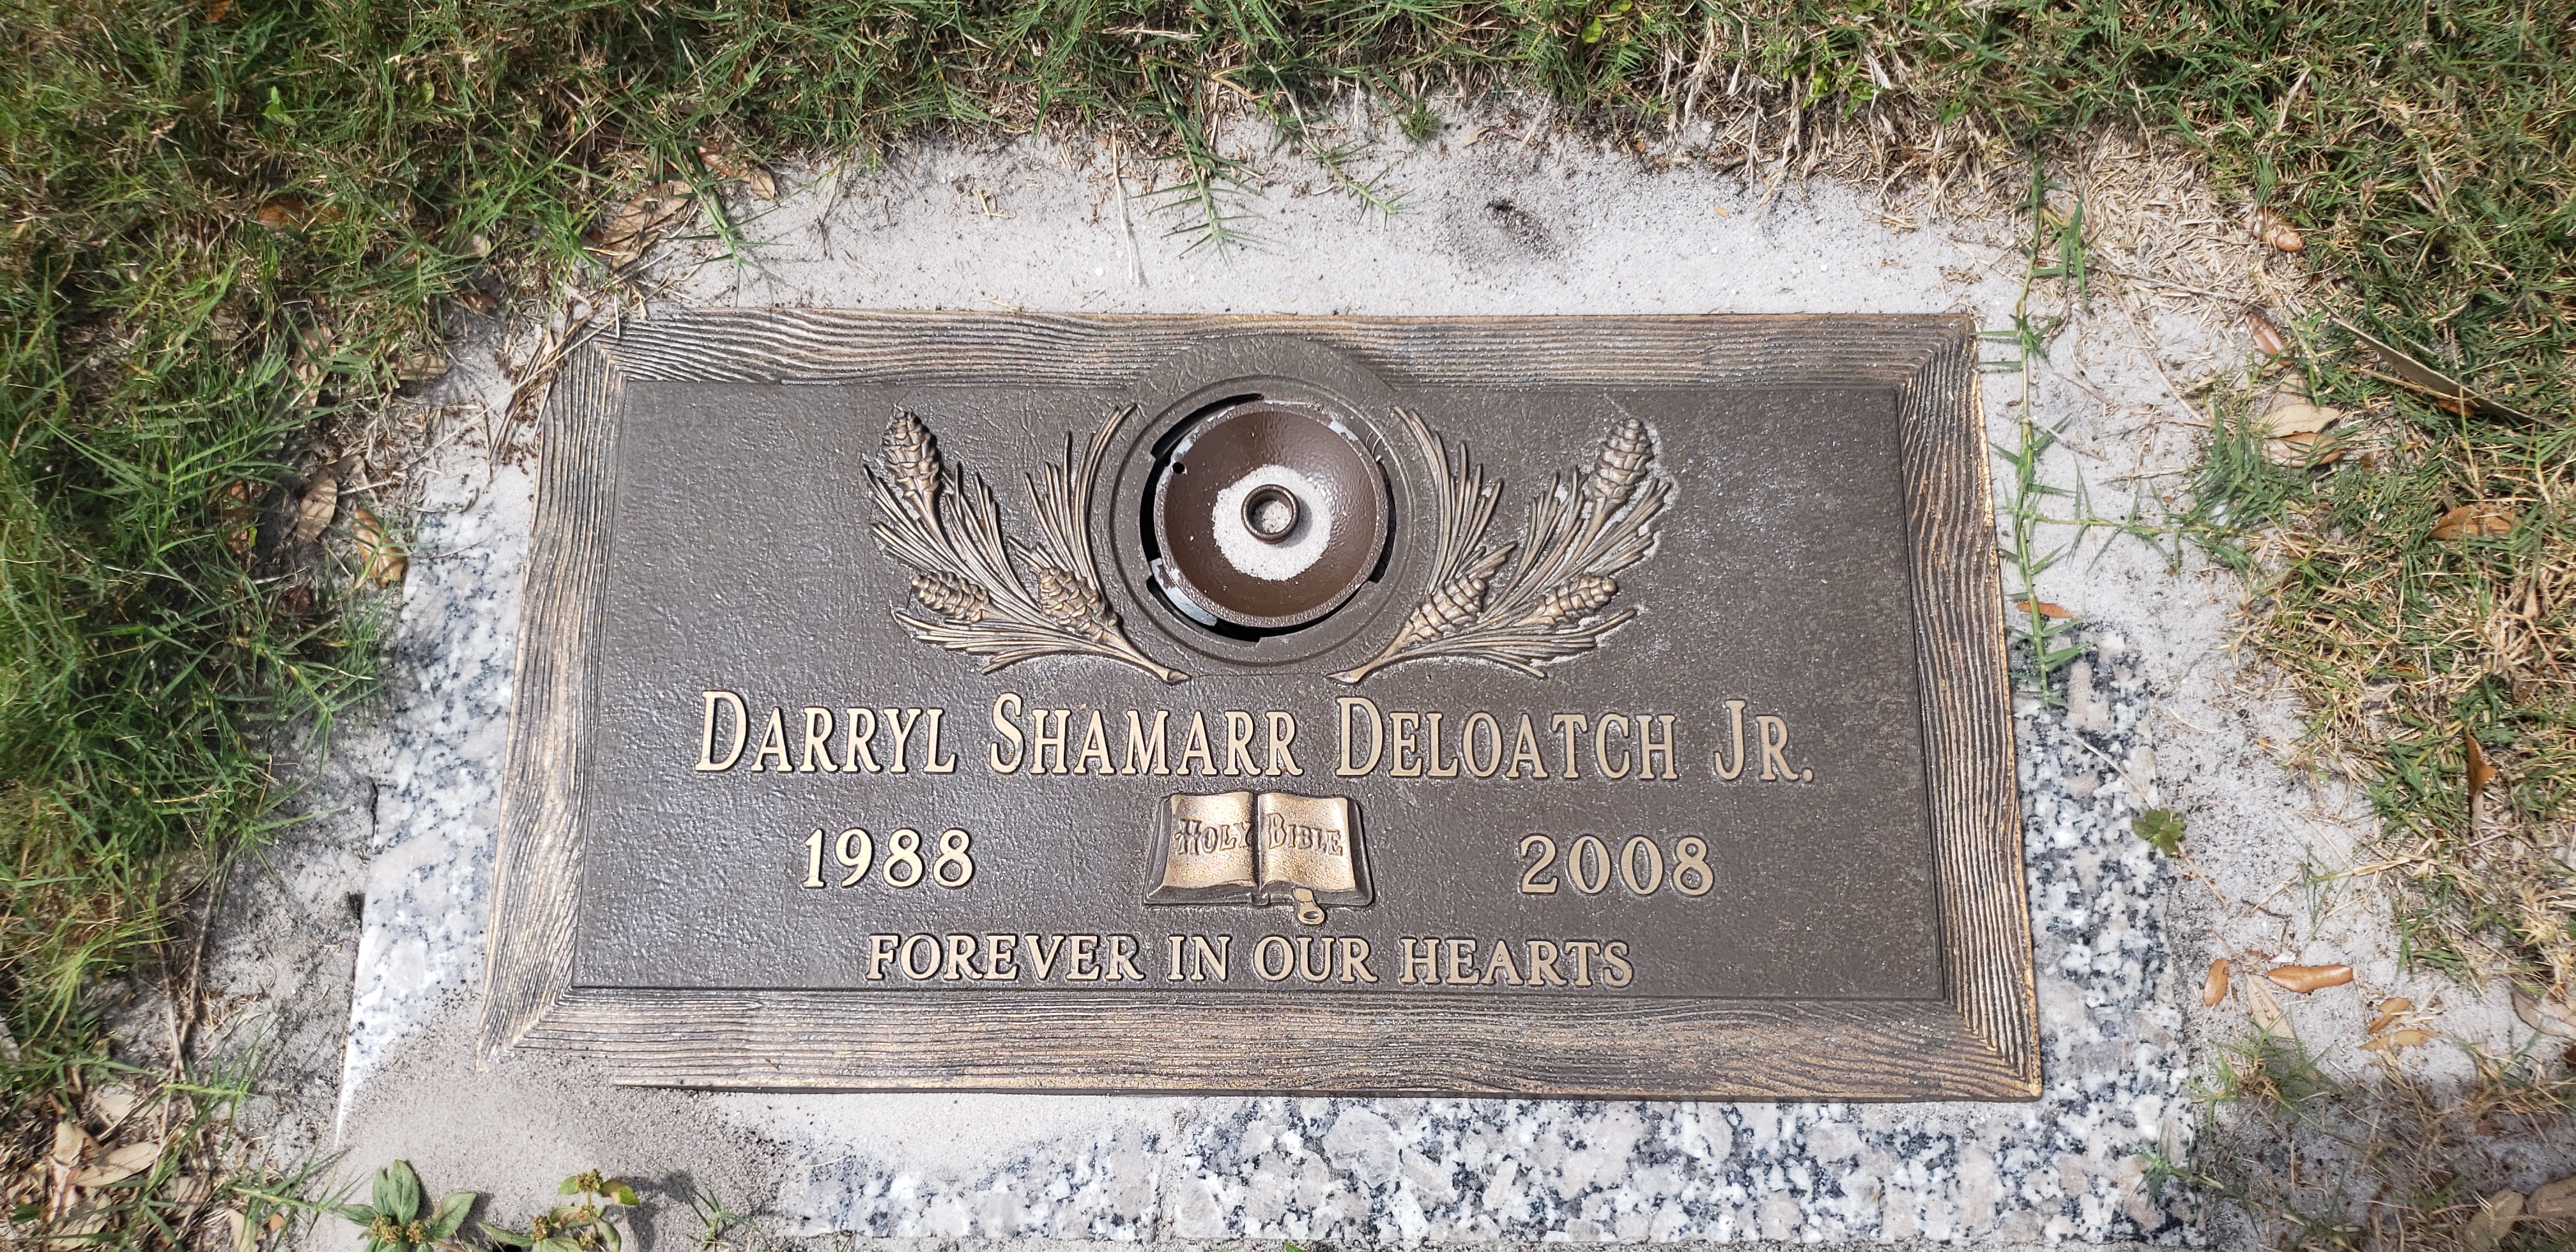 Darryl Shamarr Deloatch, Jr